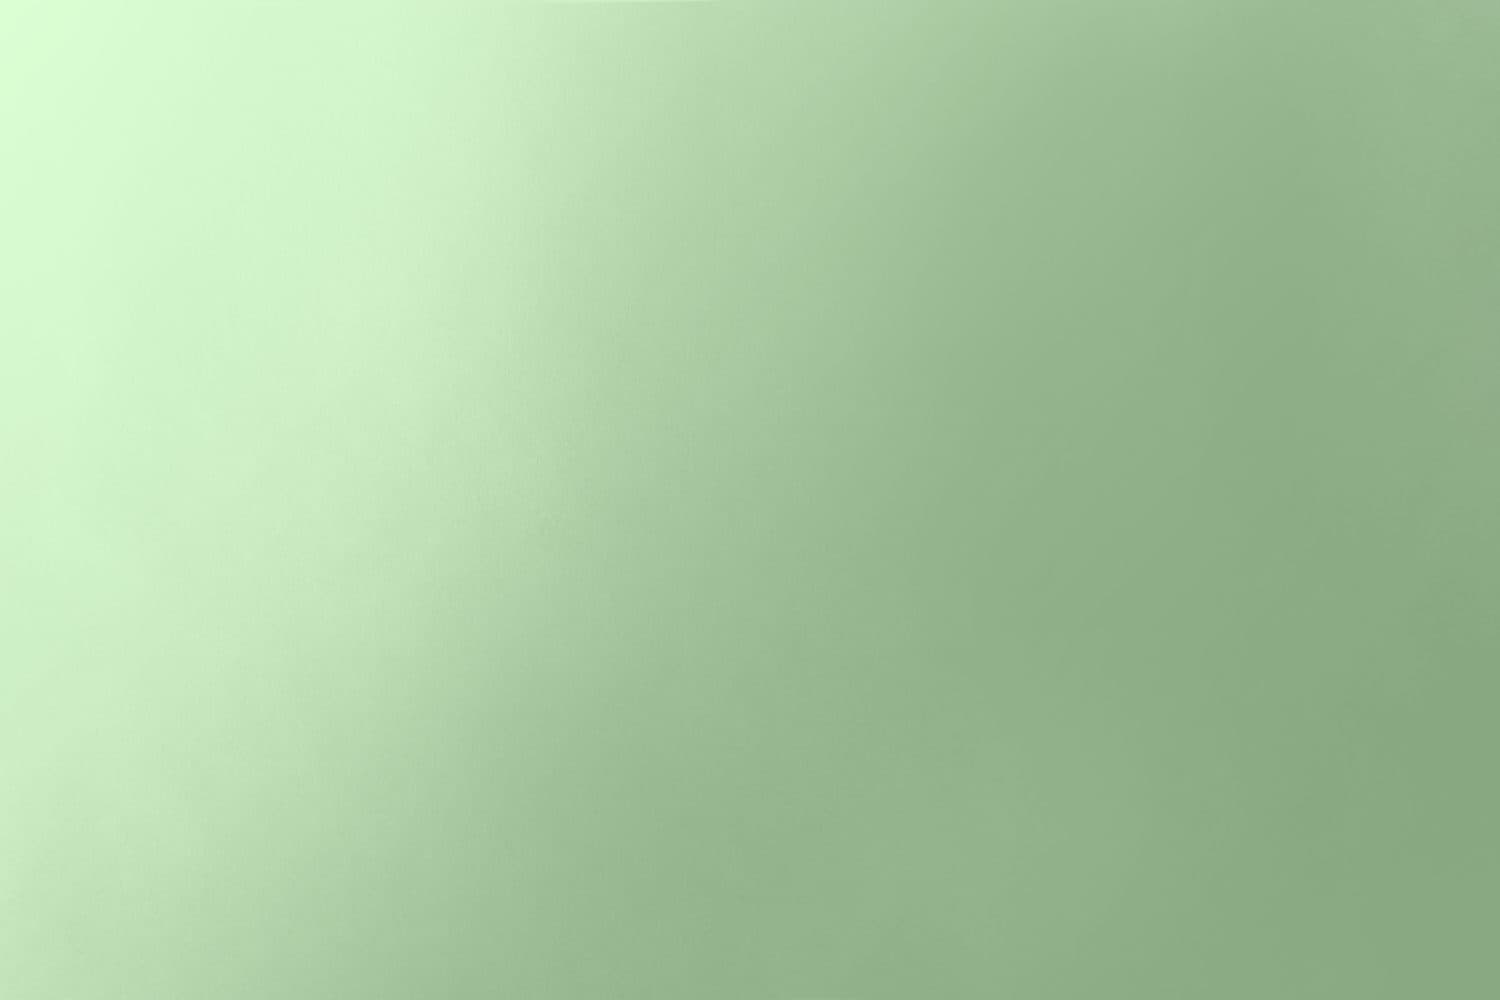 Vuoto pianura morbida gradazione di colore verde pallido su carta riciclabile texture minimalismo pacifico concetto di sfondo